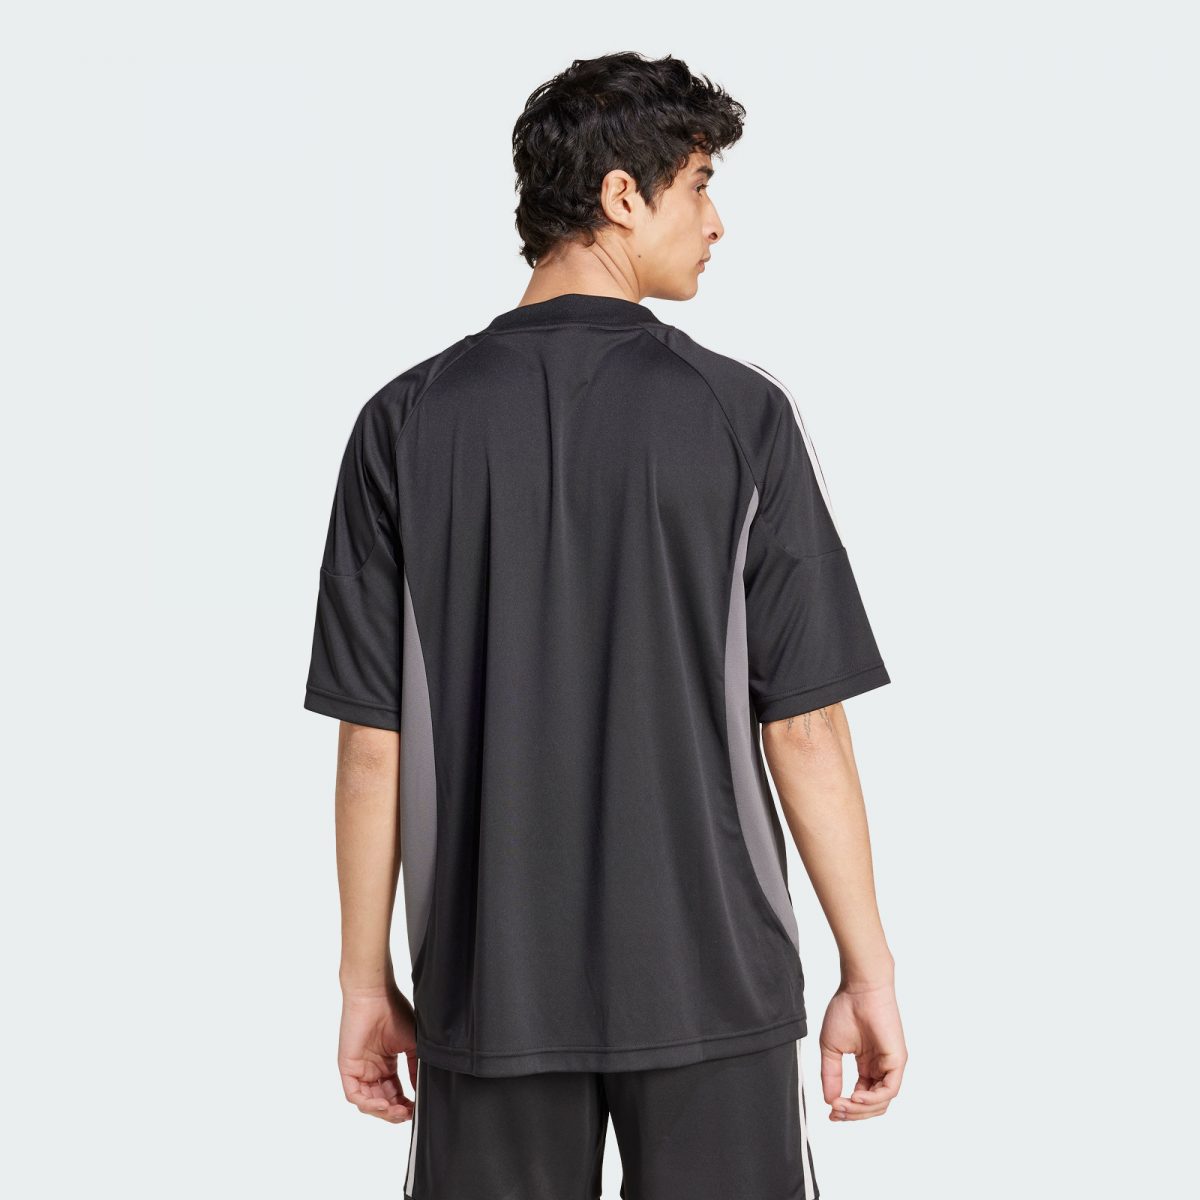 Мужская футболка adidas CLIMACOOL JERSEY черная фотография